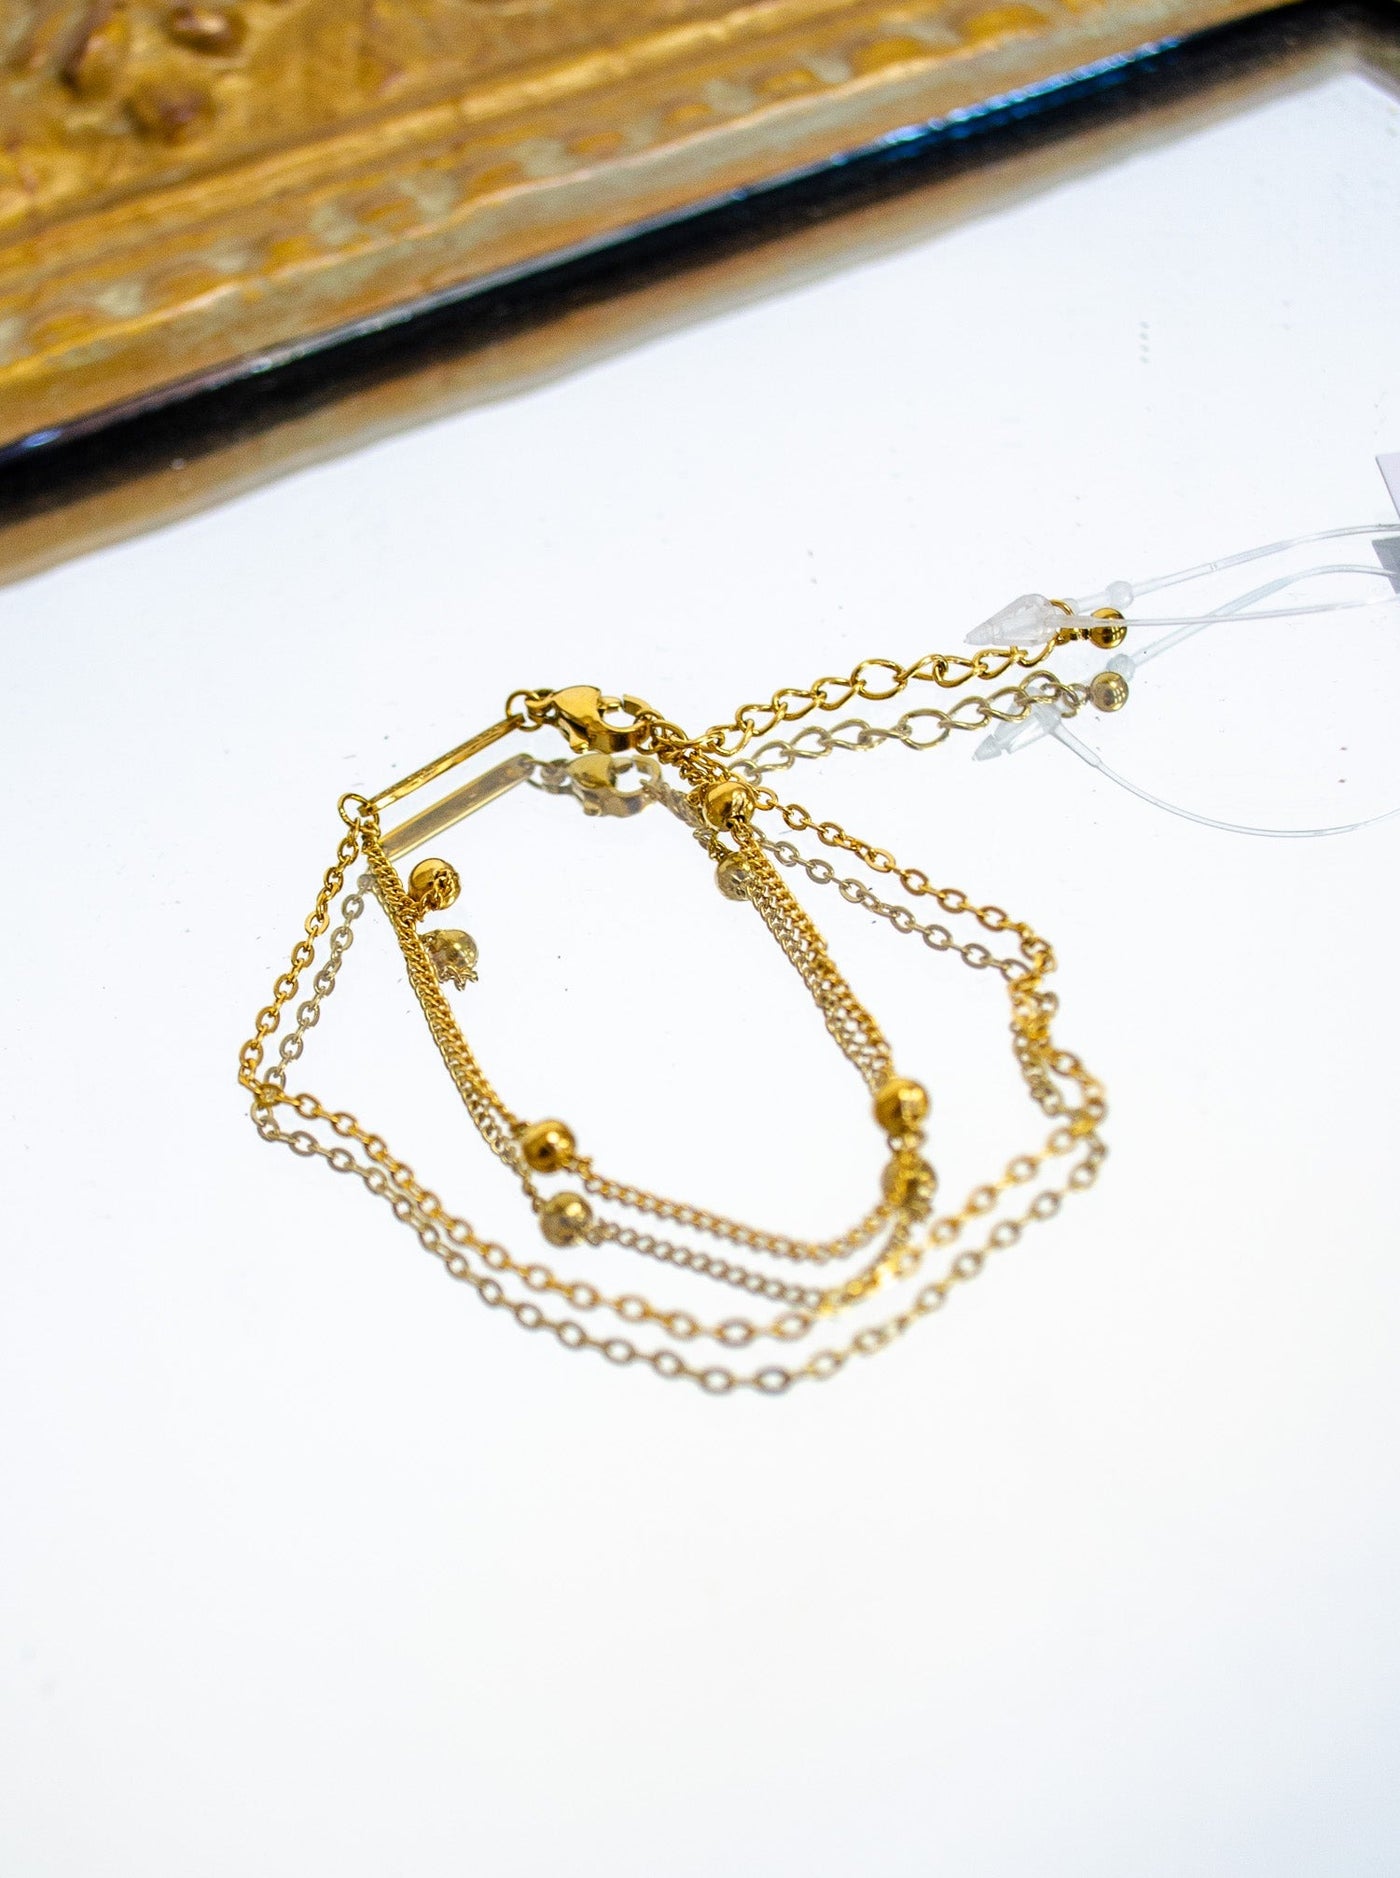 Gold double chain bracelet.